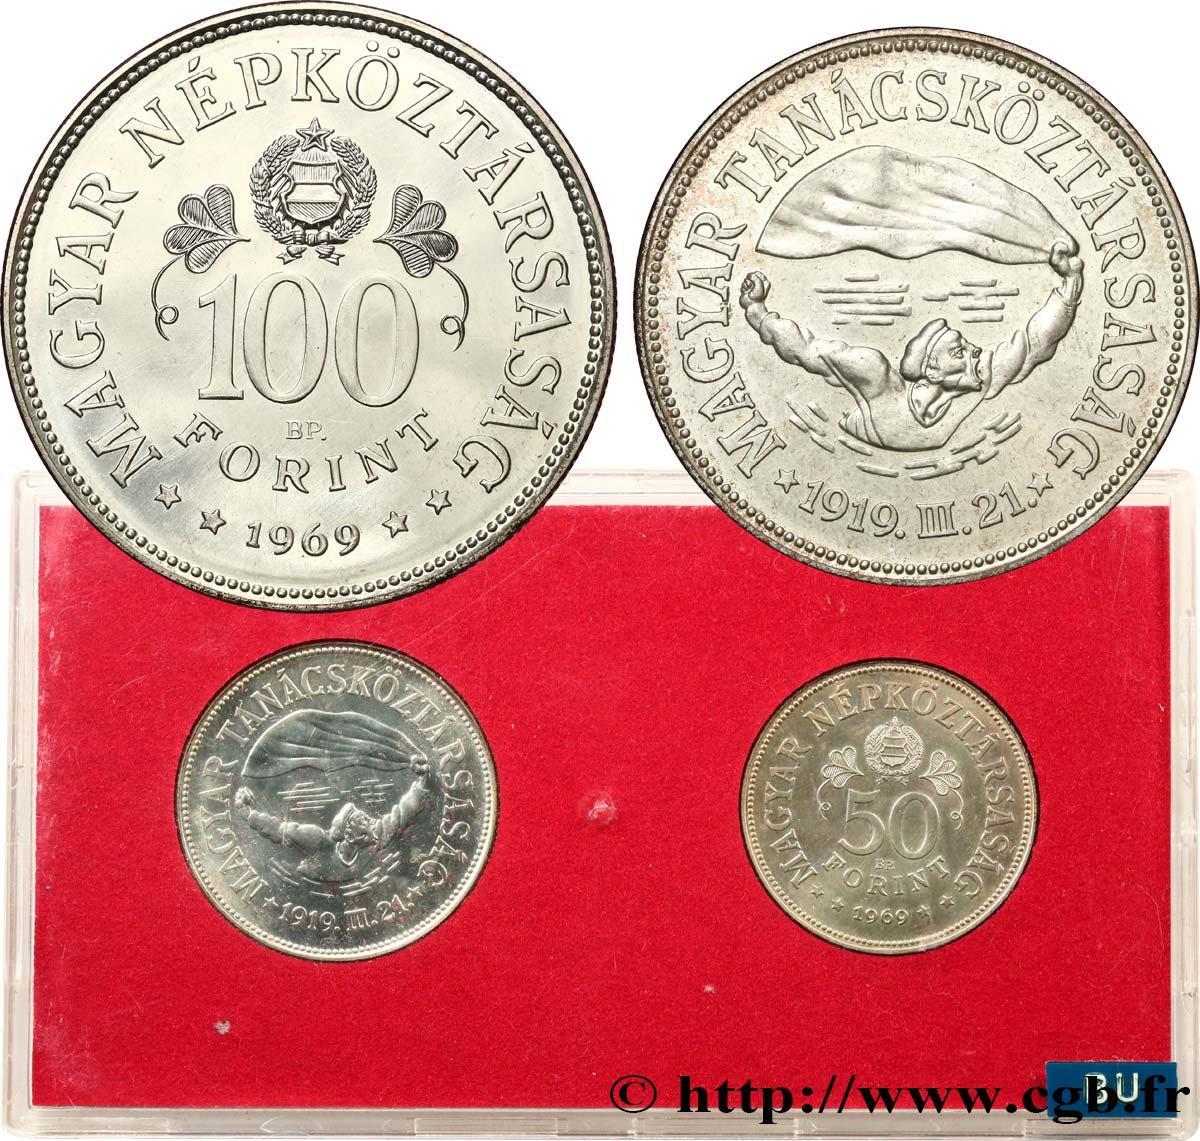 HUNGARY Série FDC - 2 monnaies - 50e anniversaire des soviets du 31 mars 1919 1969 Budapest MS 